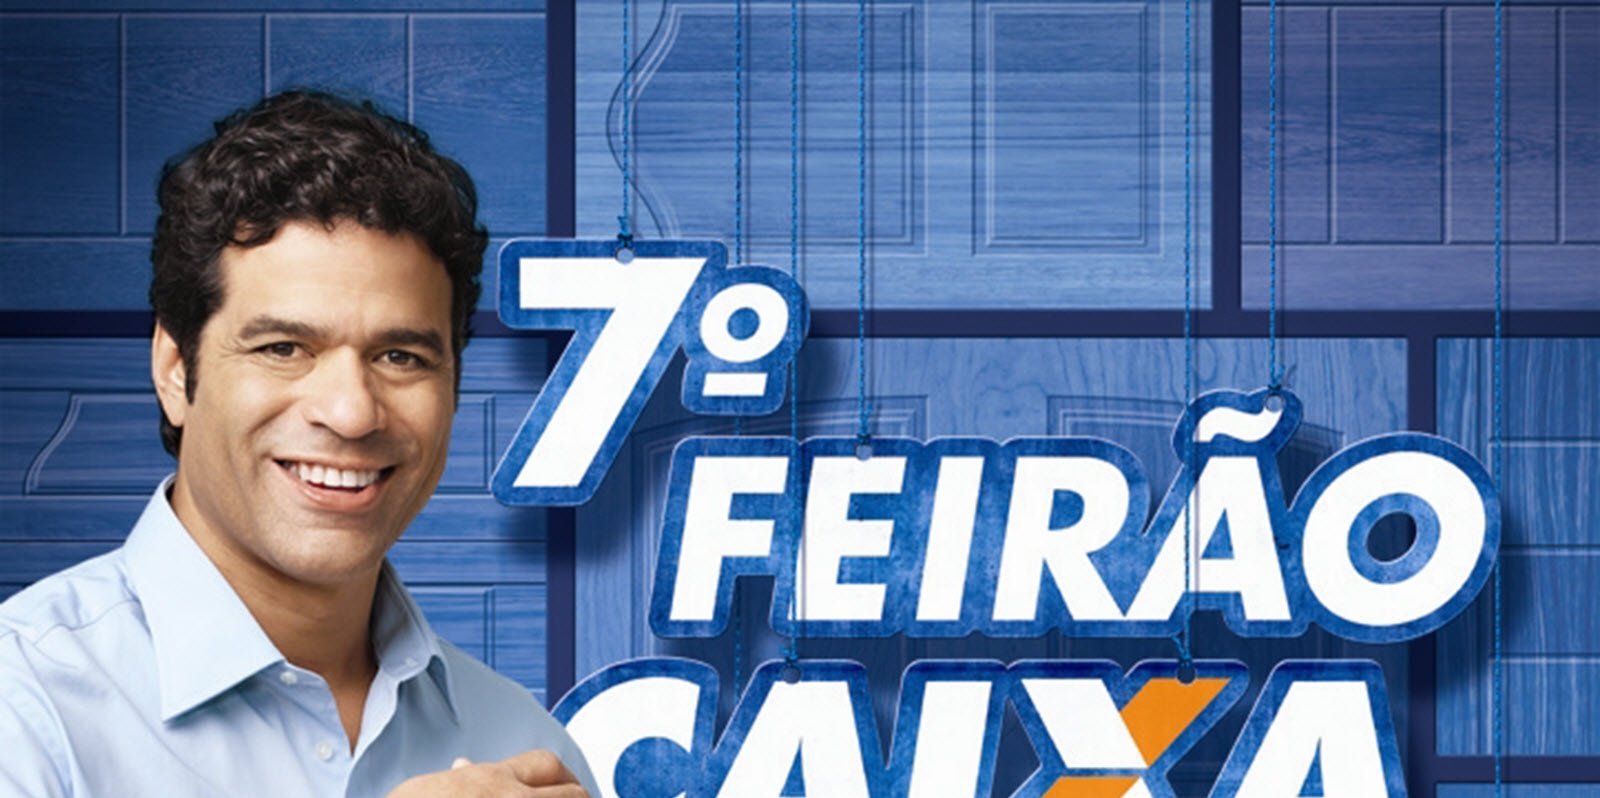 Featured image for “7° Feirão da CAIXA”